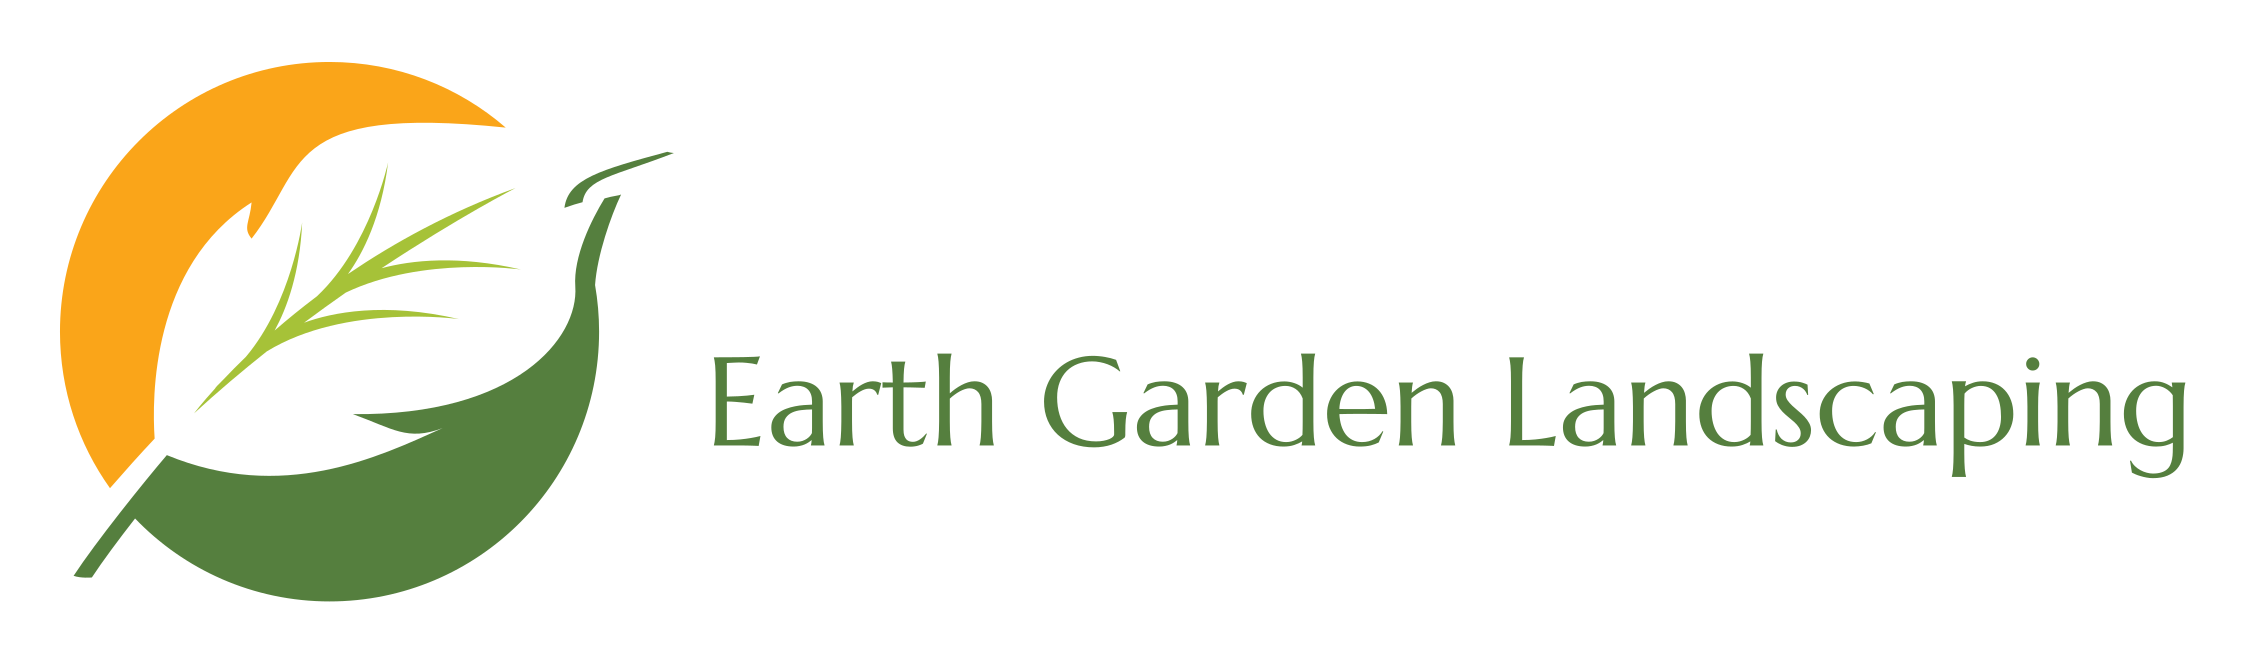 Earth Garden Landscaping Logo